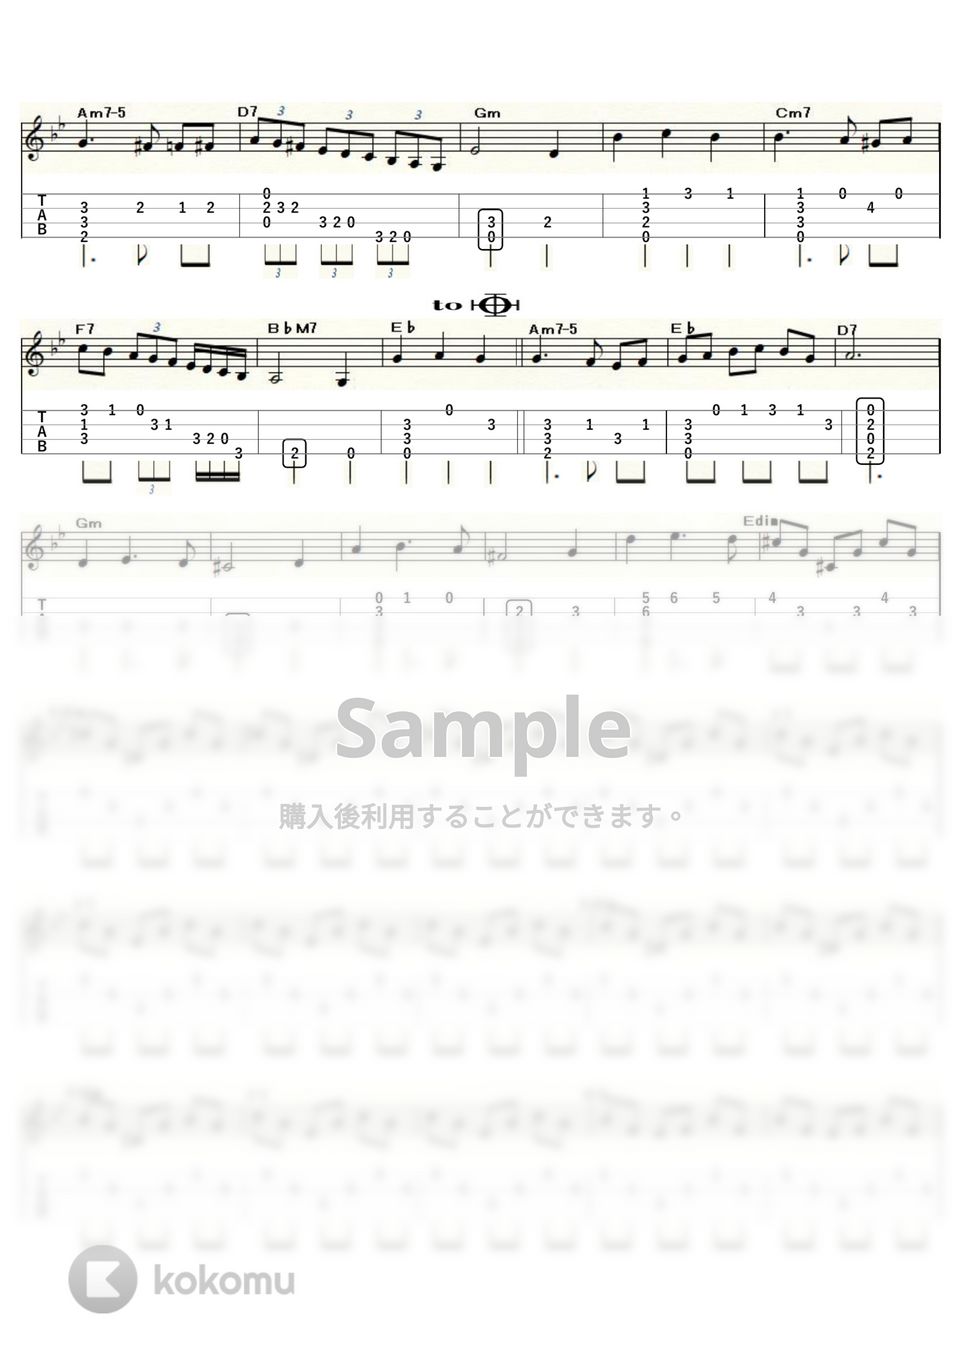 雨の訪問者 - 雨の訪問者のワルツ (ｳｸﾚﾚｿﾛ / Low-G / 中級) by ukulelepapa